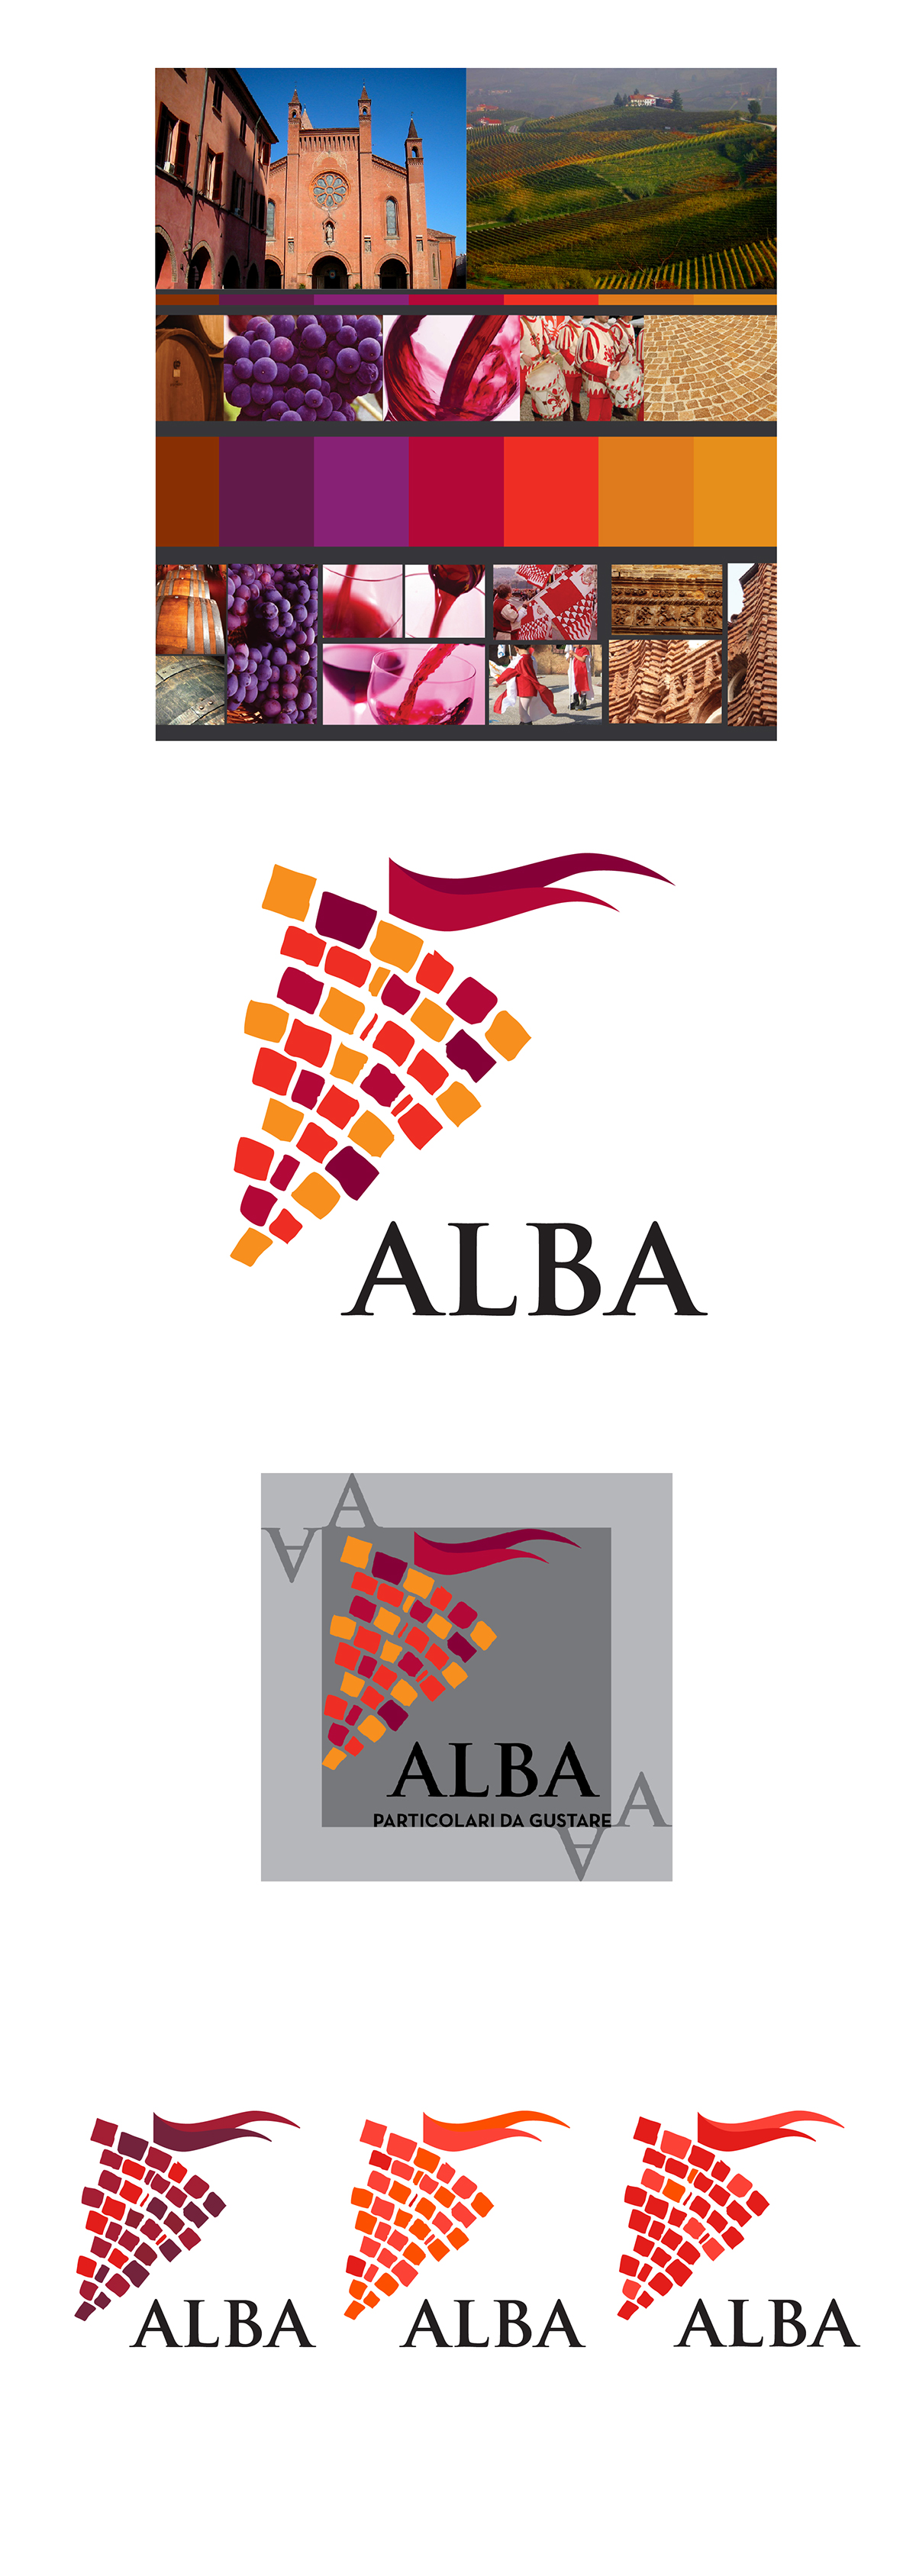 alba piemonte ferrero politecnico logo identity identità brand